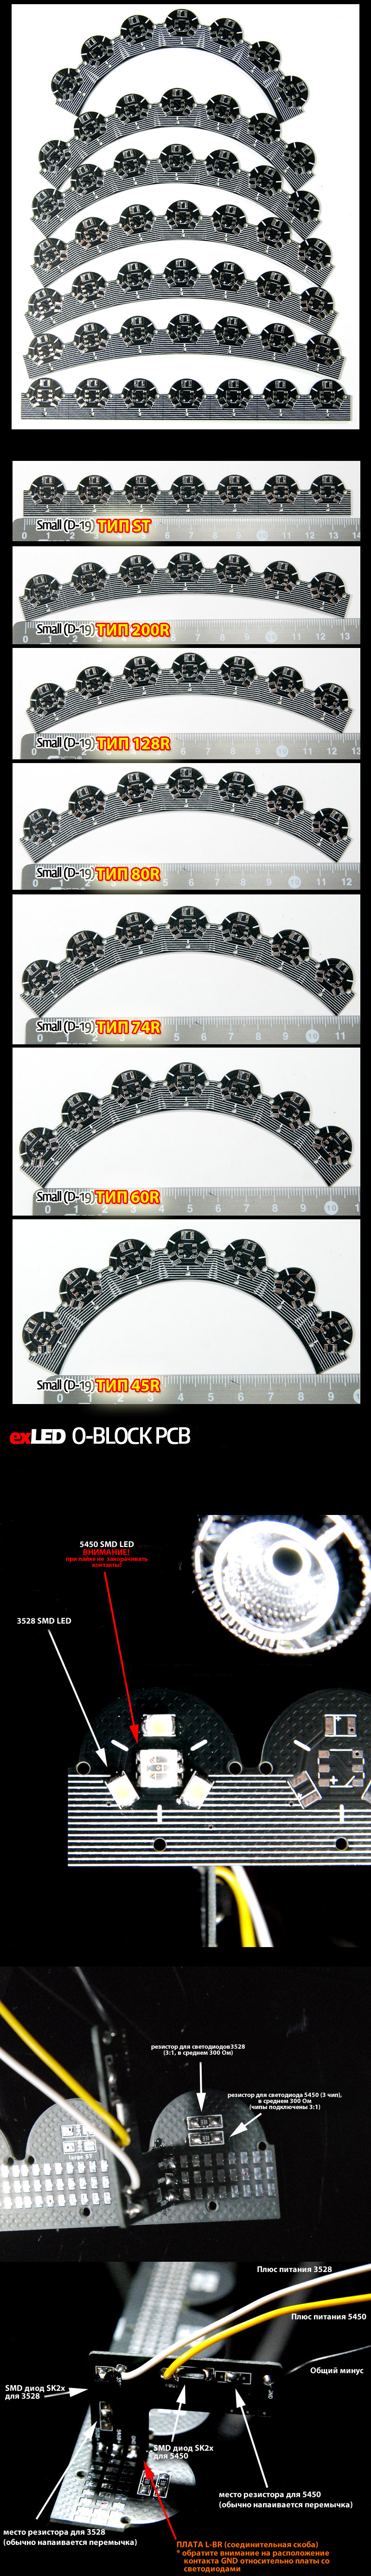 Плата O-BLOCK D-19 PCB, ST